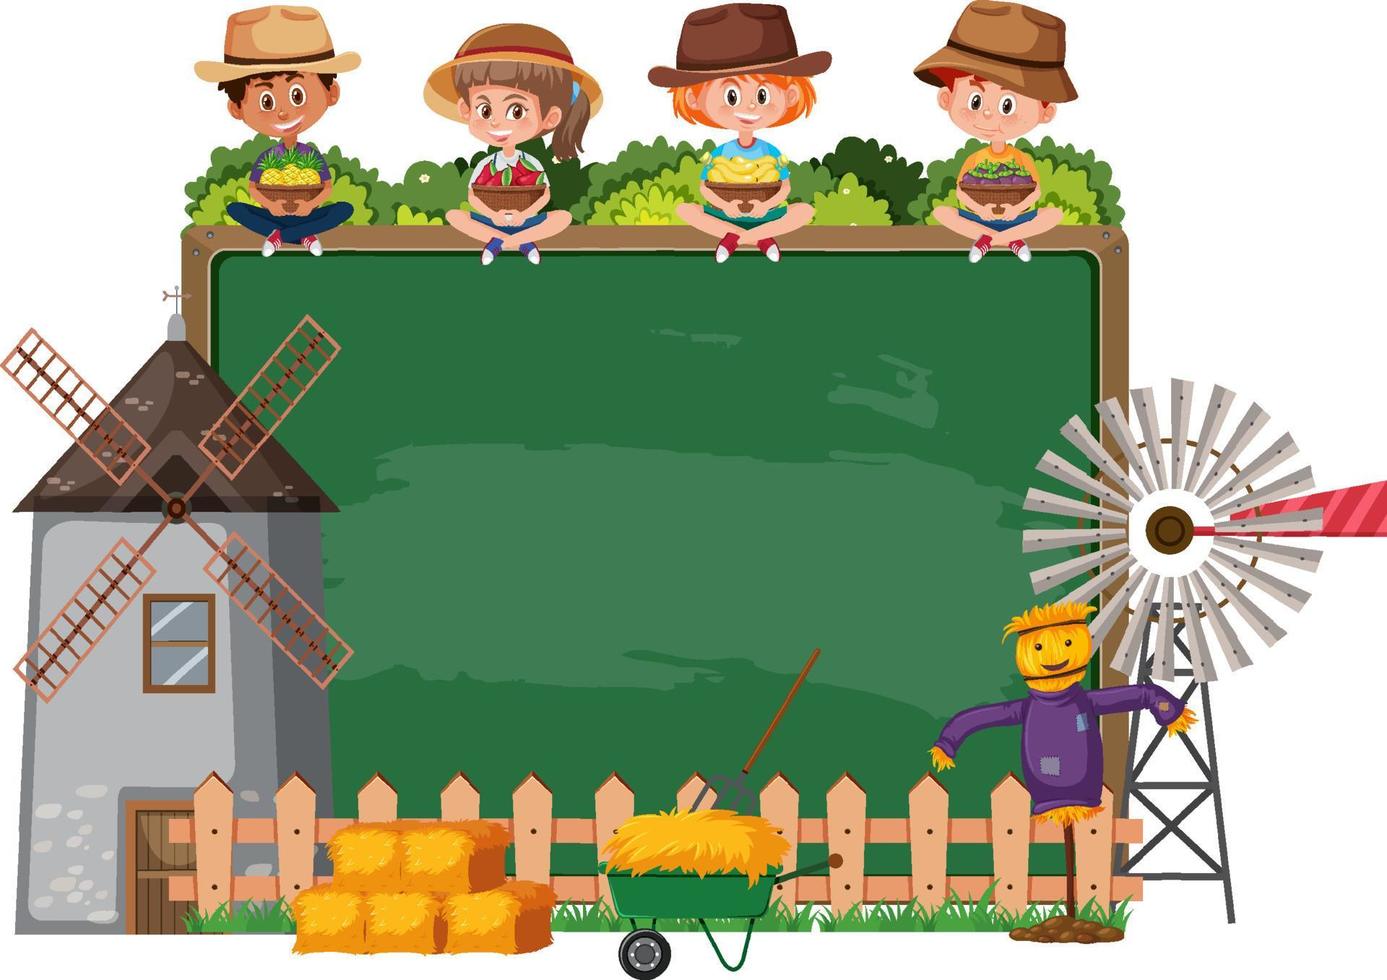 leeg schoolbord met kinderen en boerderijvoorwerpen vector